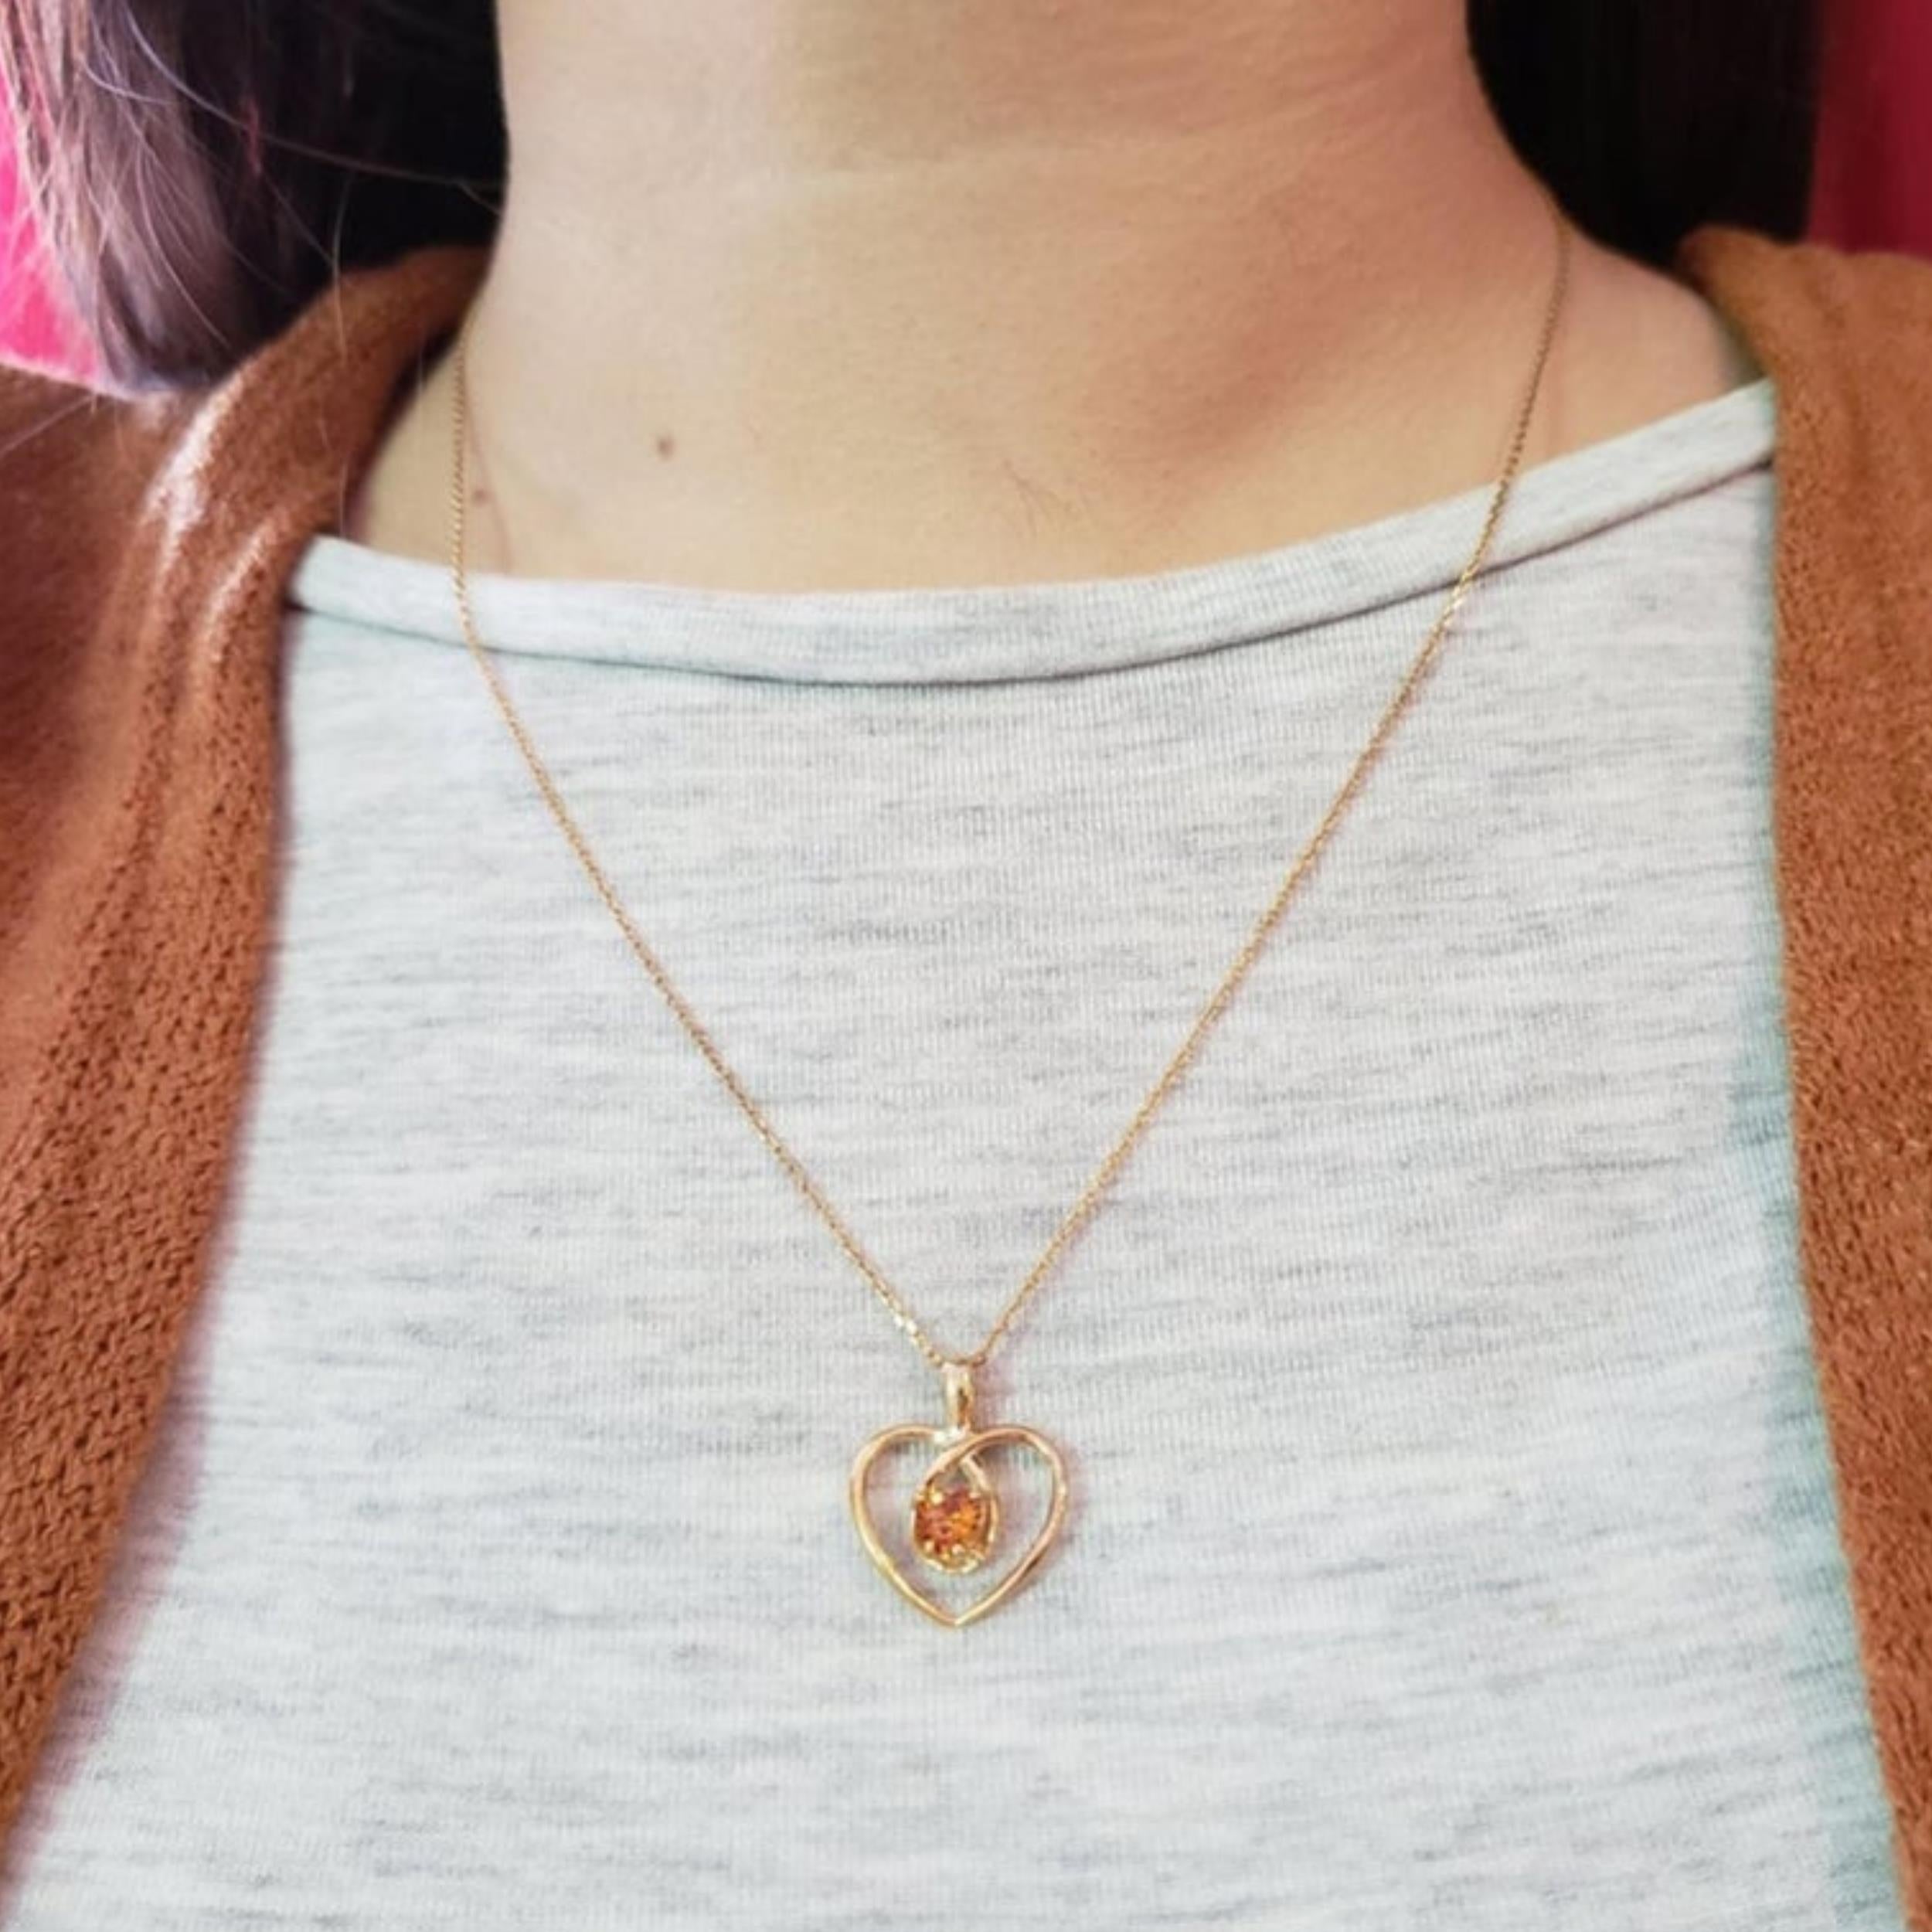 14Kt Gold Orange Citrine Heart Design Pendant Necklace